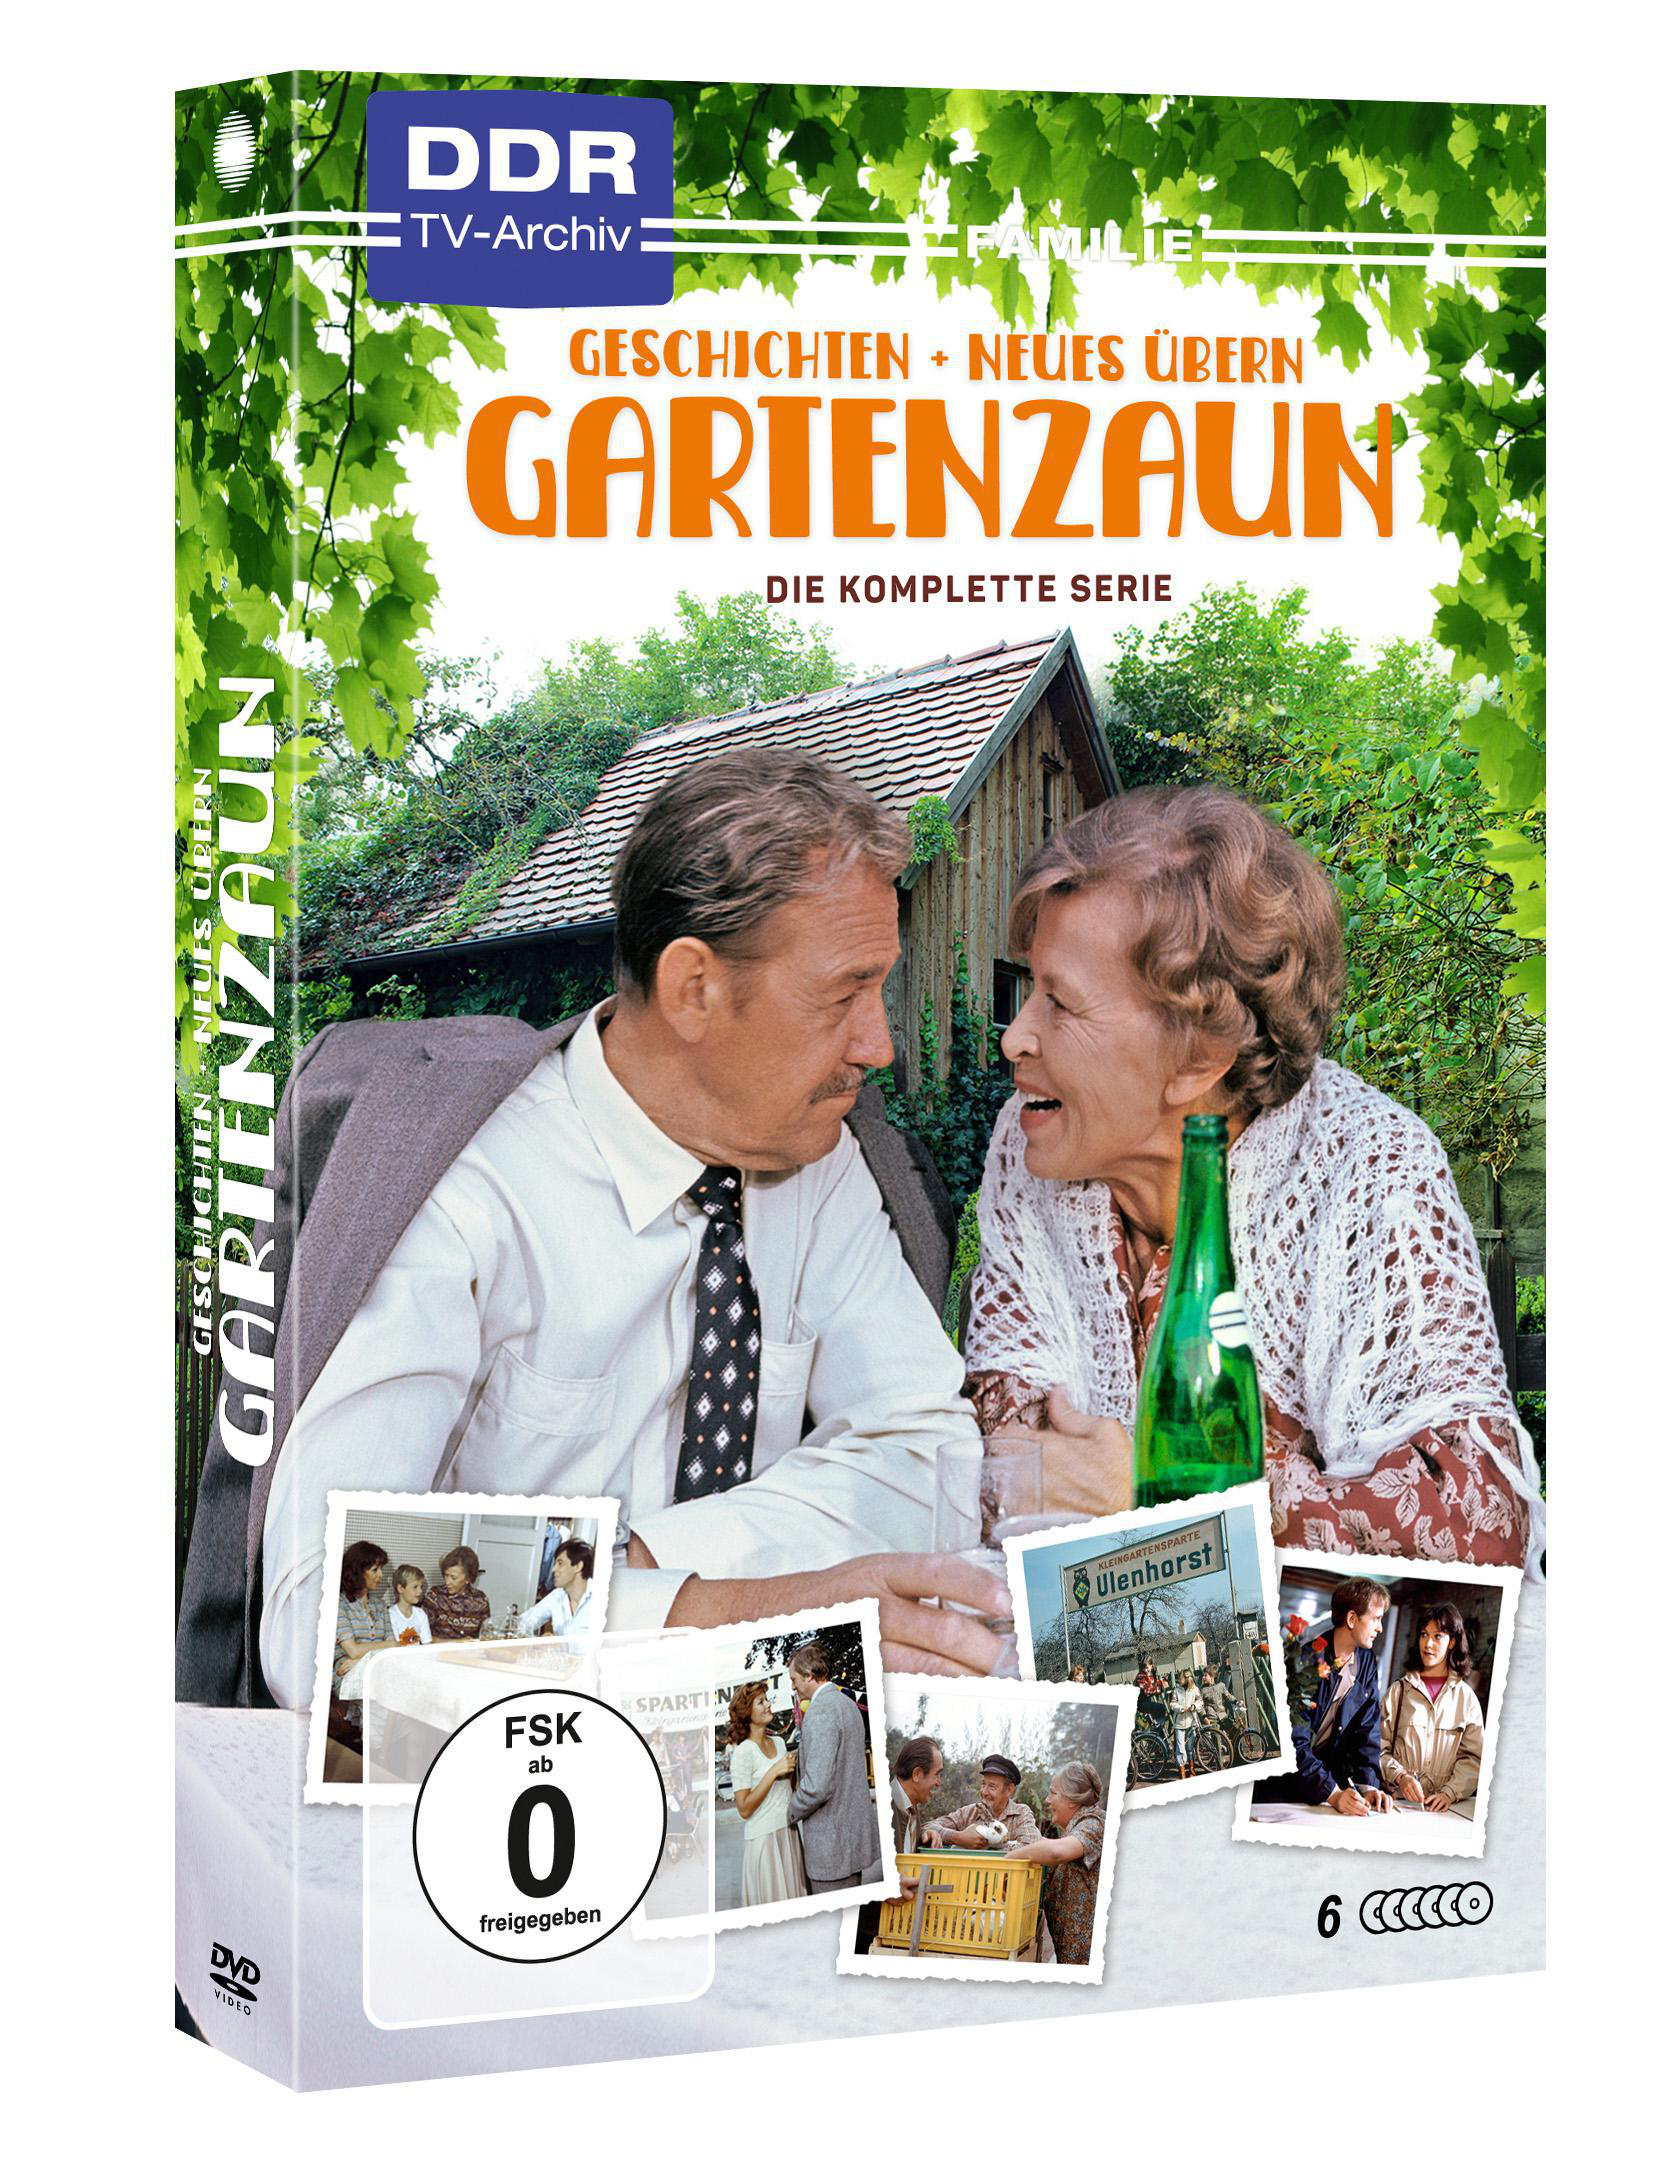 Geschichten DVD Gartenzaun & Neues übern